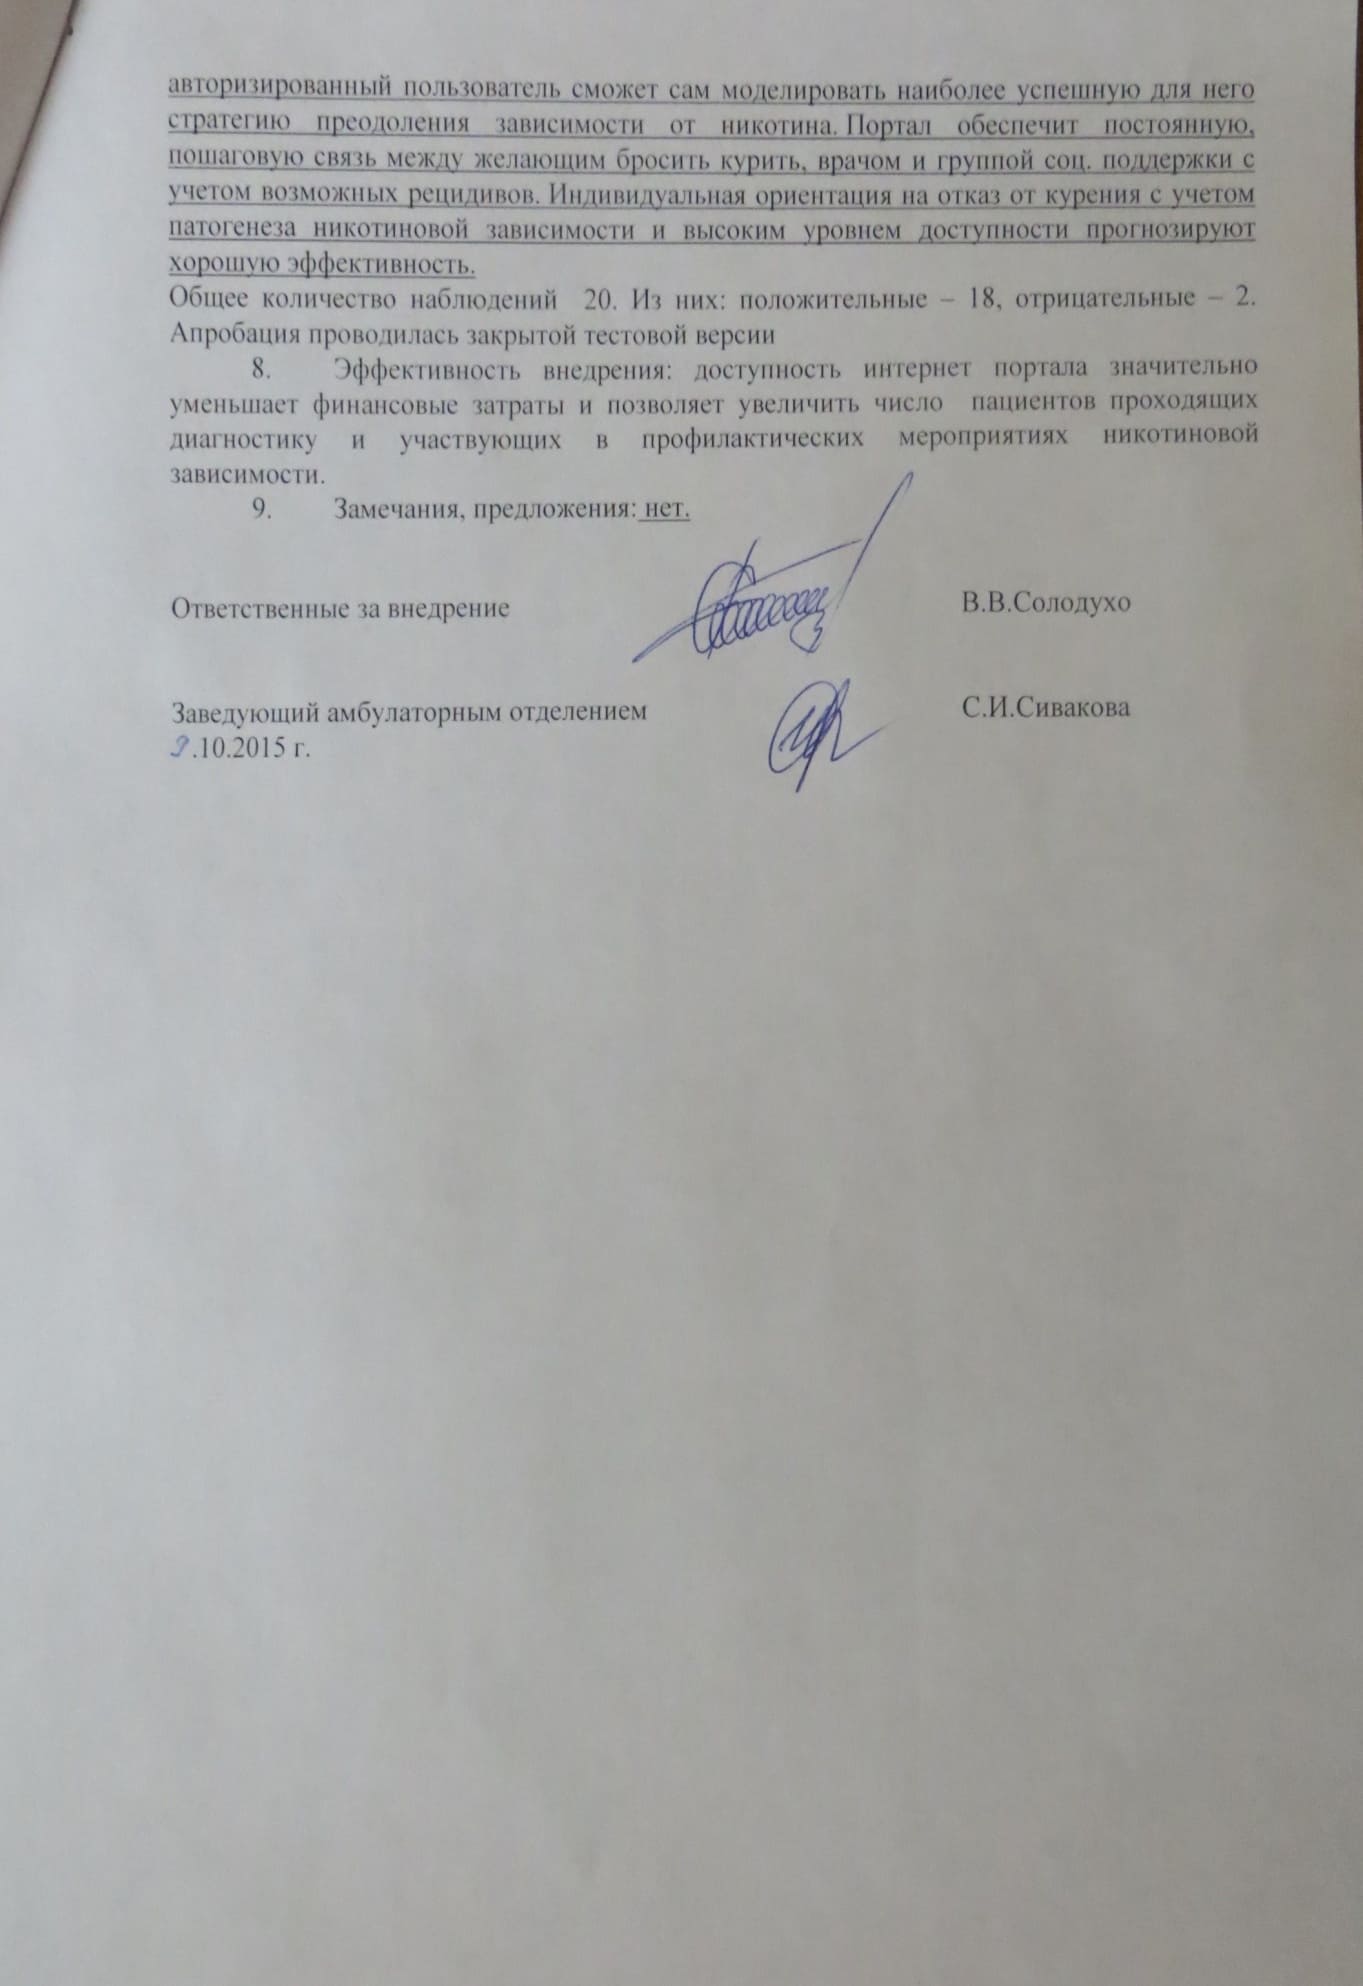 Акт внедрения в лечебную практику (диагностика и профилактика, часть 2), Минск, Беларусь 2015